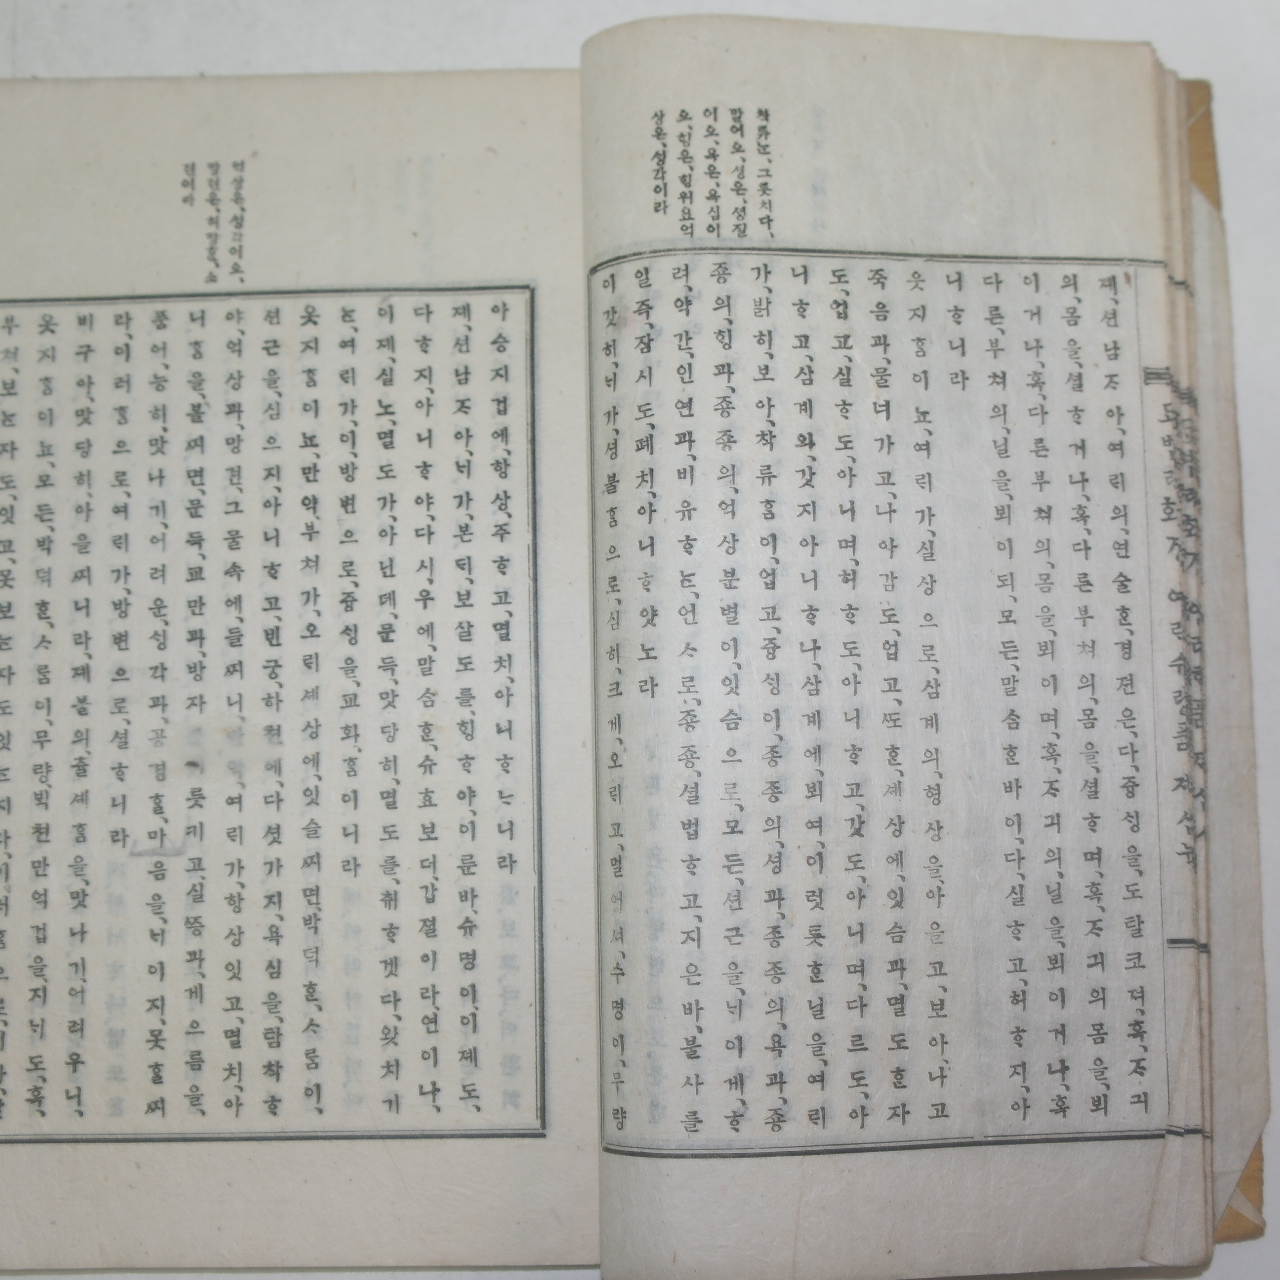 1919년 경성간행 순한글본 불경 언문번역 법화경 하권 1책